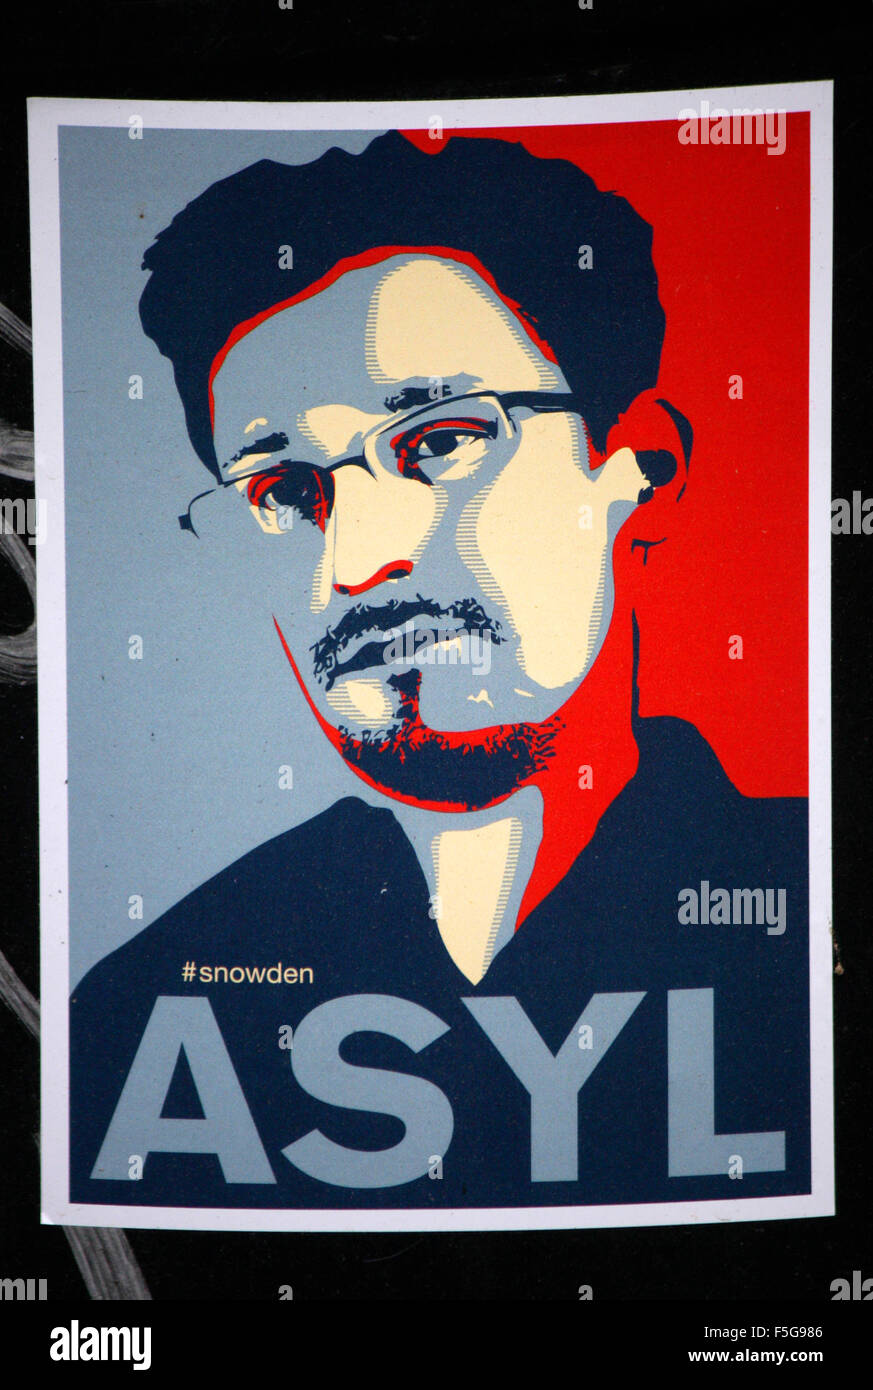 Sticker Mit Dem Porträt von Edward Snoden Und Dem Slogan "Asyl", Berlin-Tiergarten. Stockfoto